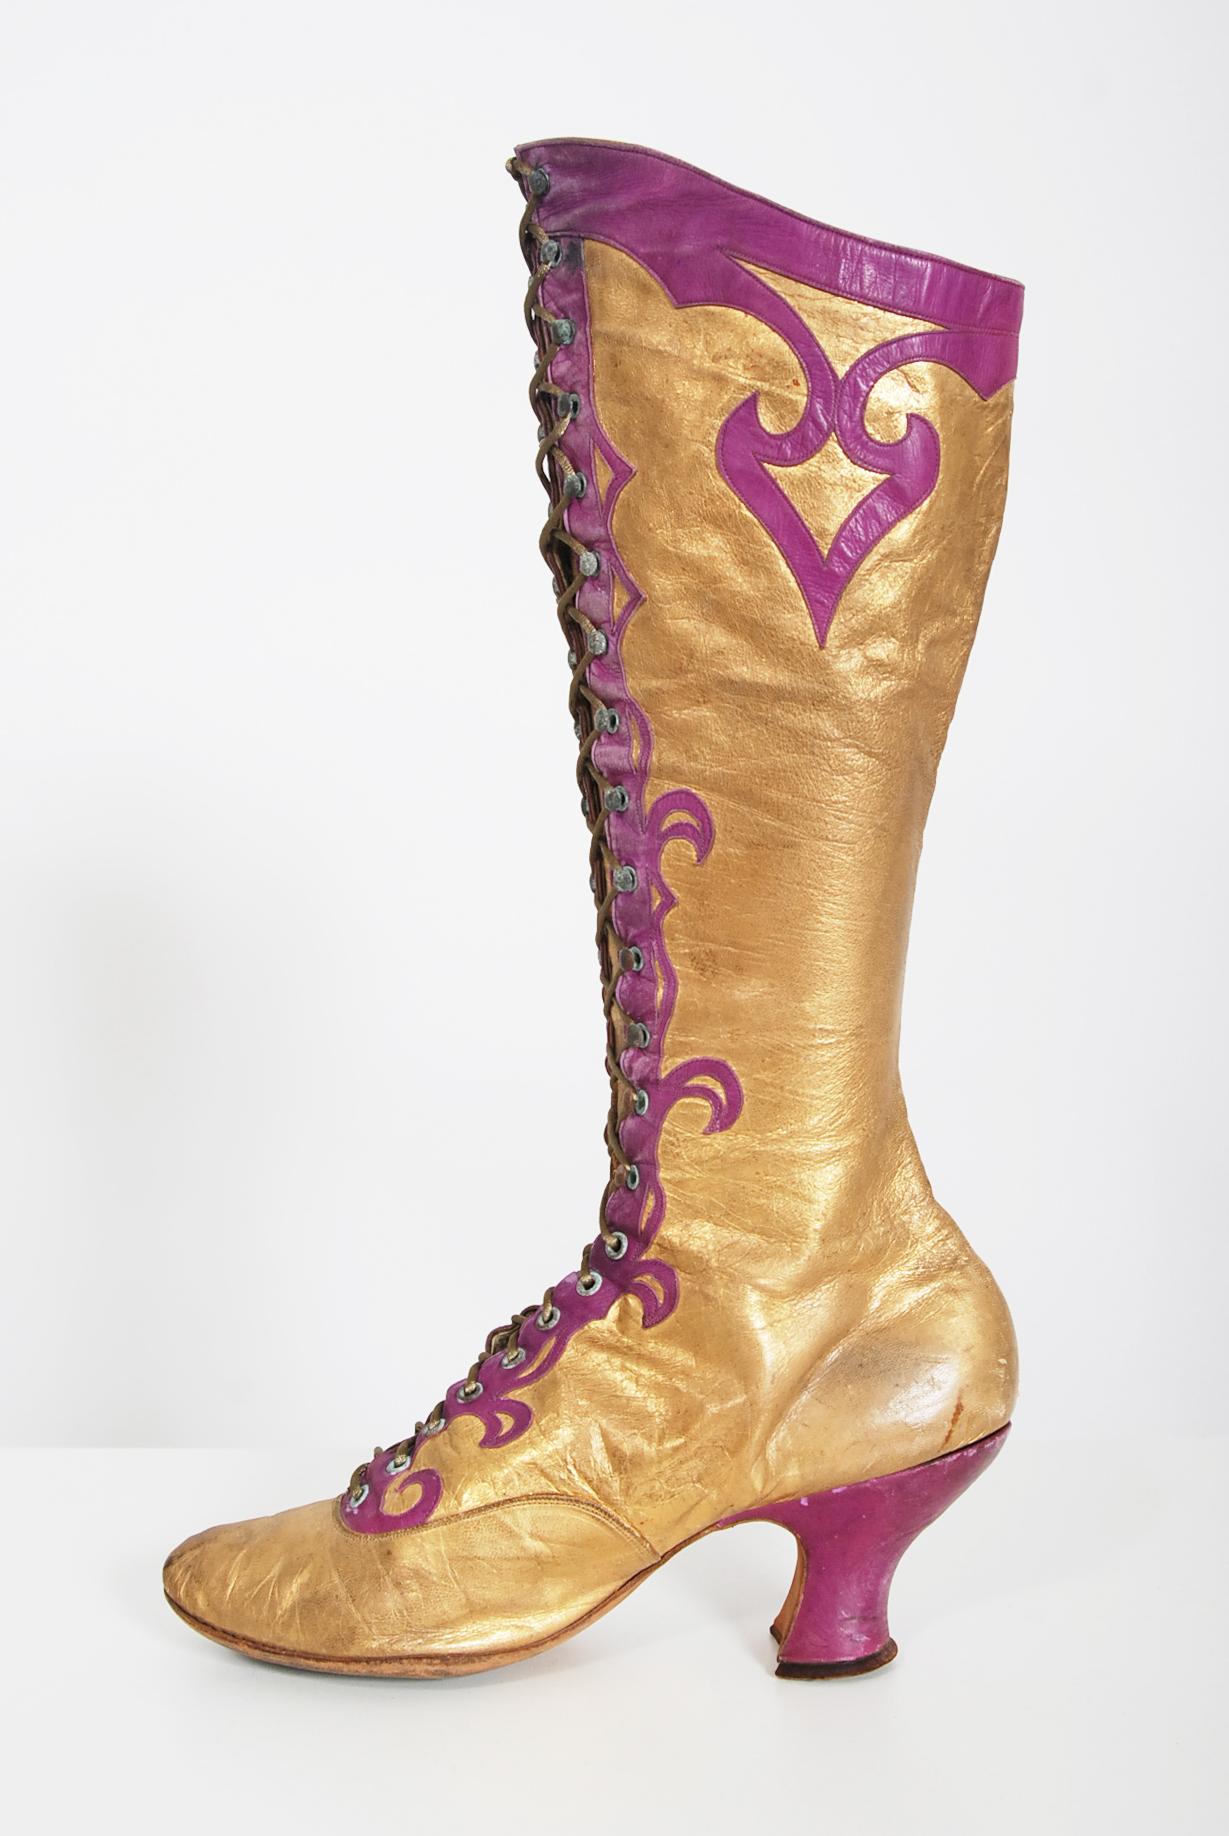 Époustouflante et incroyablement difficile à trouver, cette paire de bottes Alfred J. Cammeyer, fabriquées en haute couture, date de l'époque de la mode des années 1890. Les chaussures peuvent être datées de cette période grâce à la combinaison du